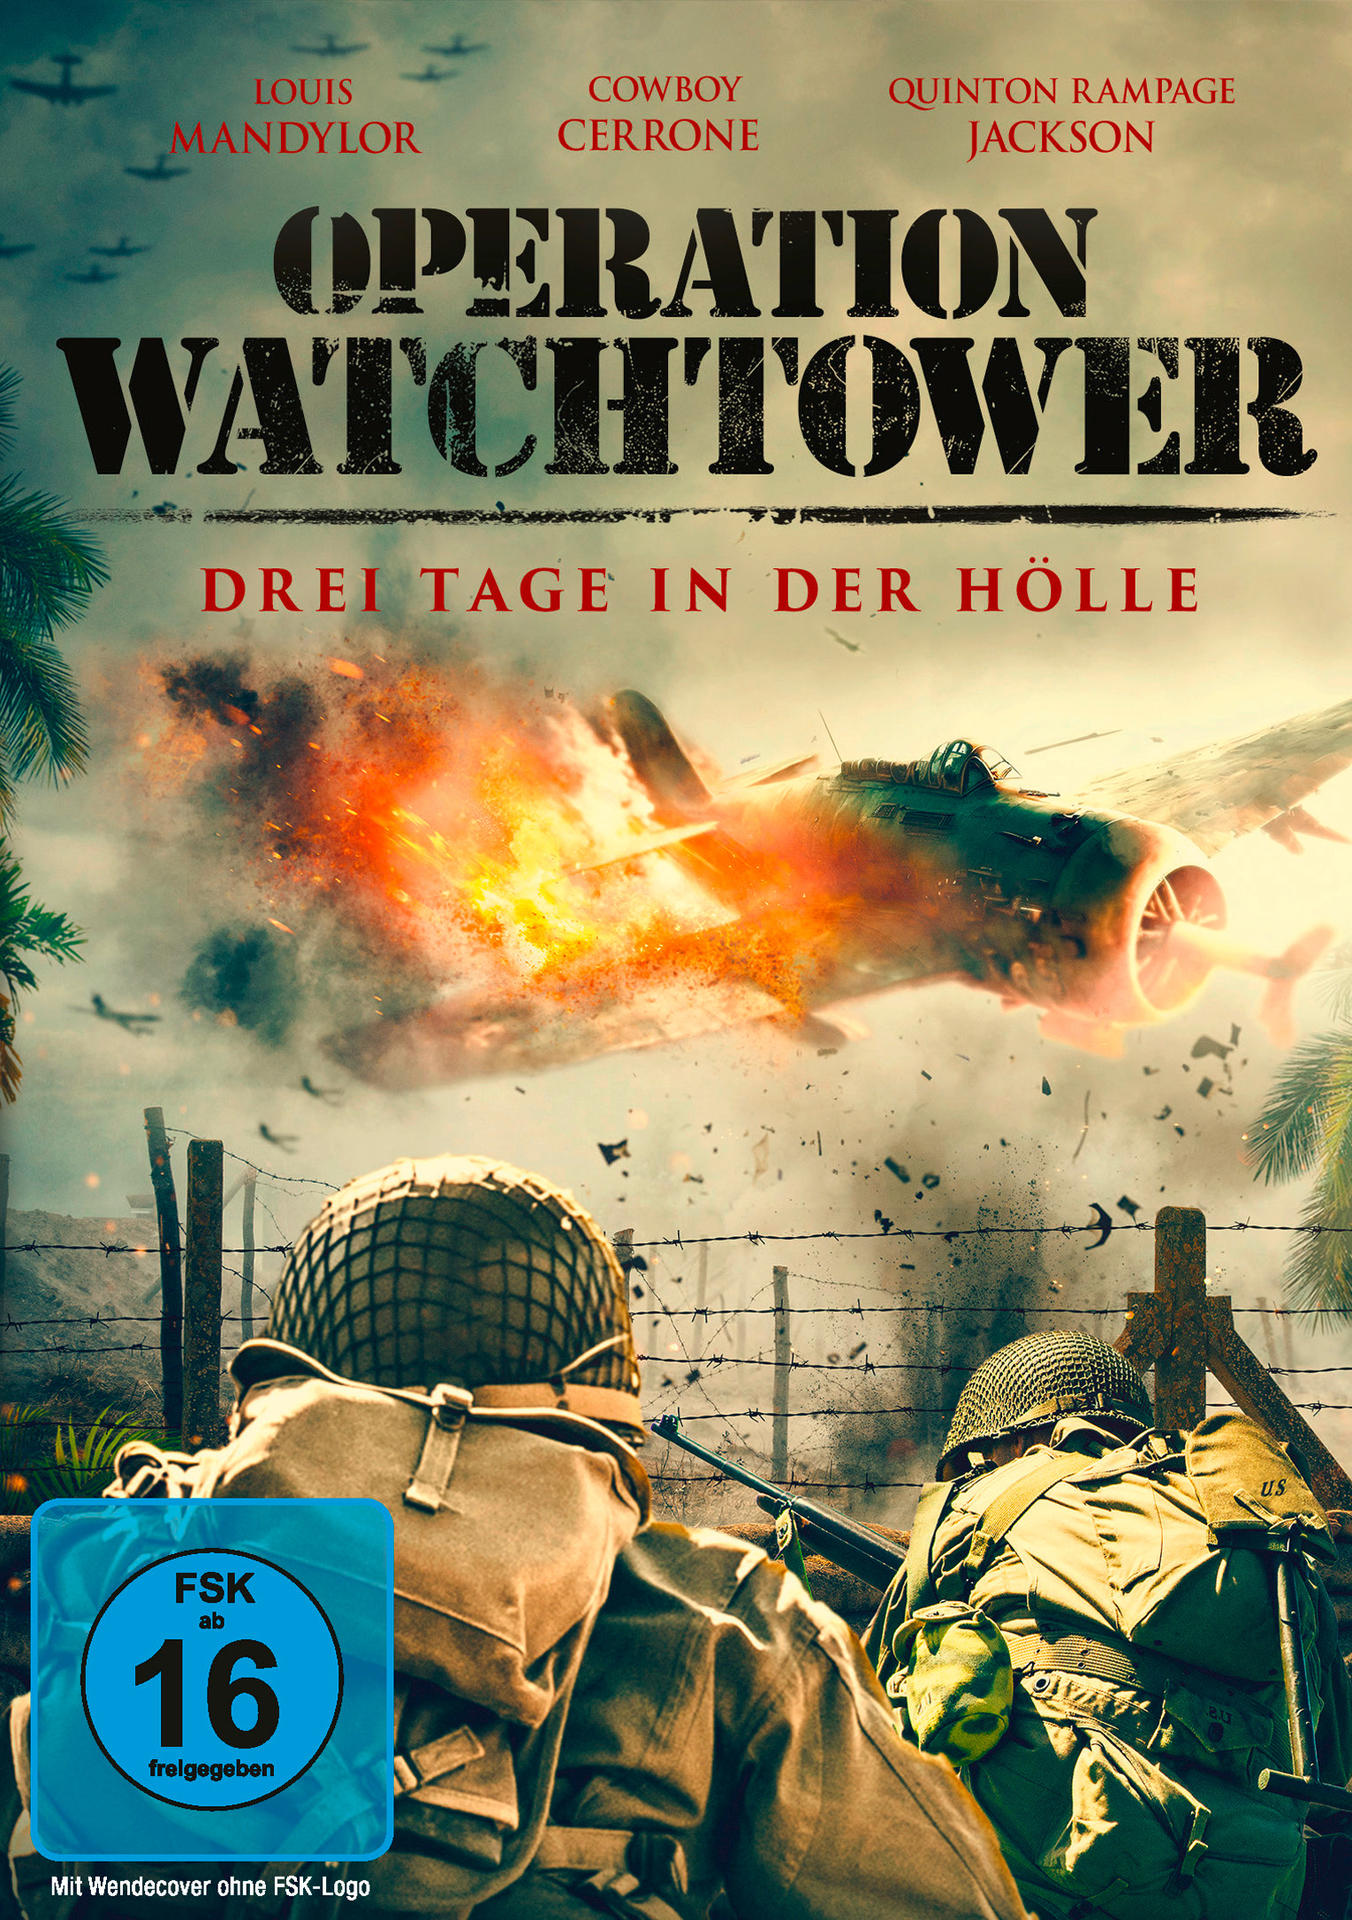 der Operation Drei - Watchtower DVD in Tage Hölle